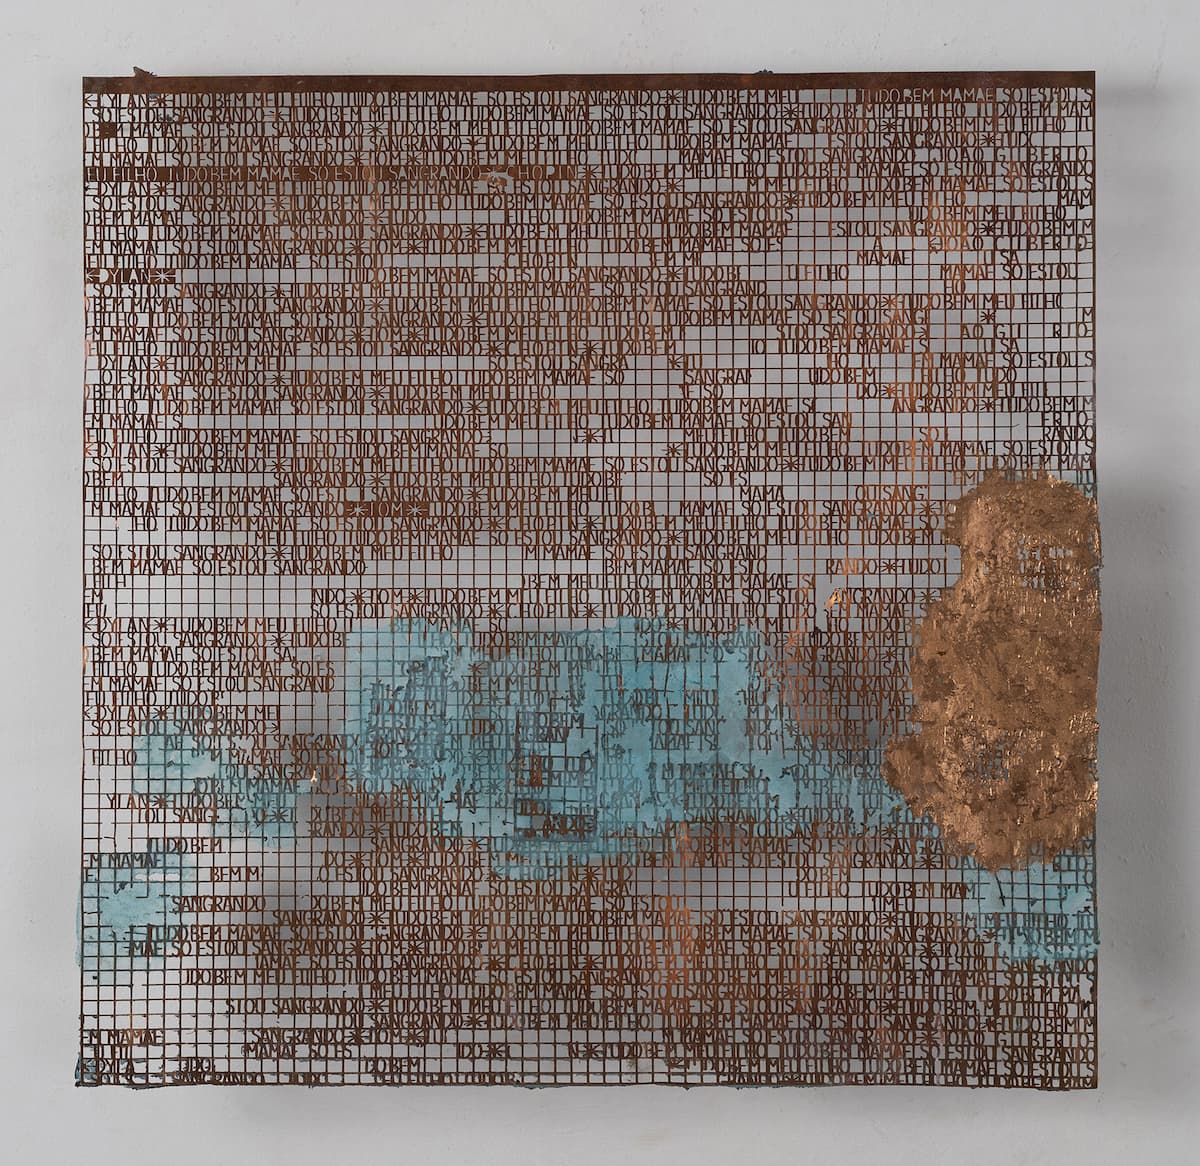 Hilal Sami Hilal, 2020, Untitled, série Tudo Bem, cobre/corrosão e papel feito à mão, 58 x 58 cm. Fotos: bruno coelho.